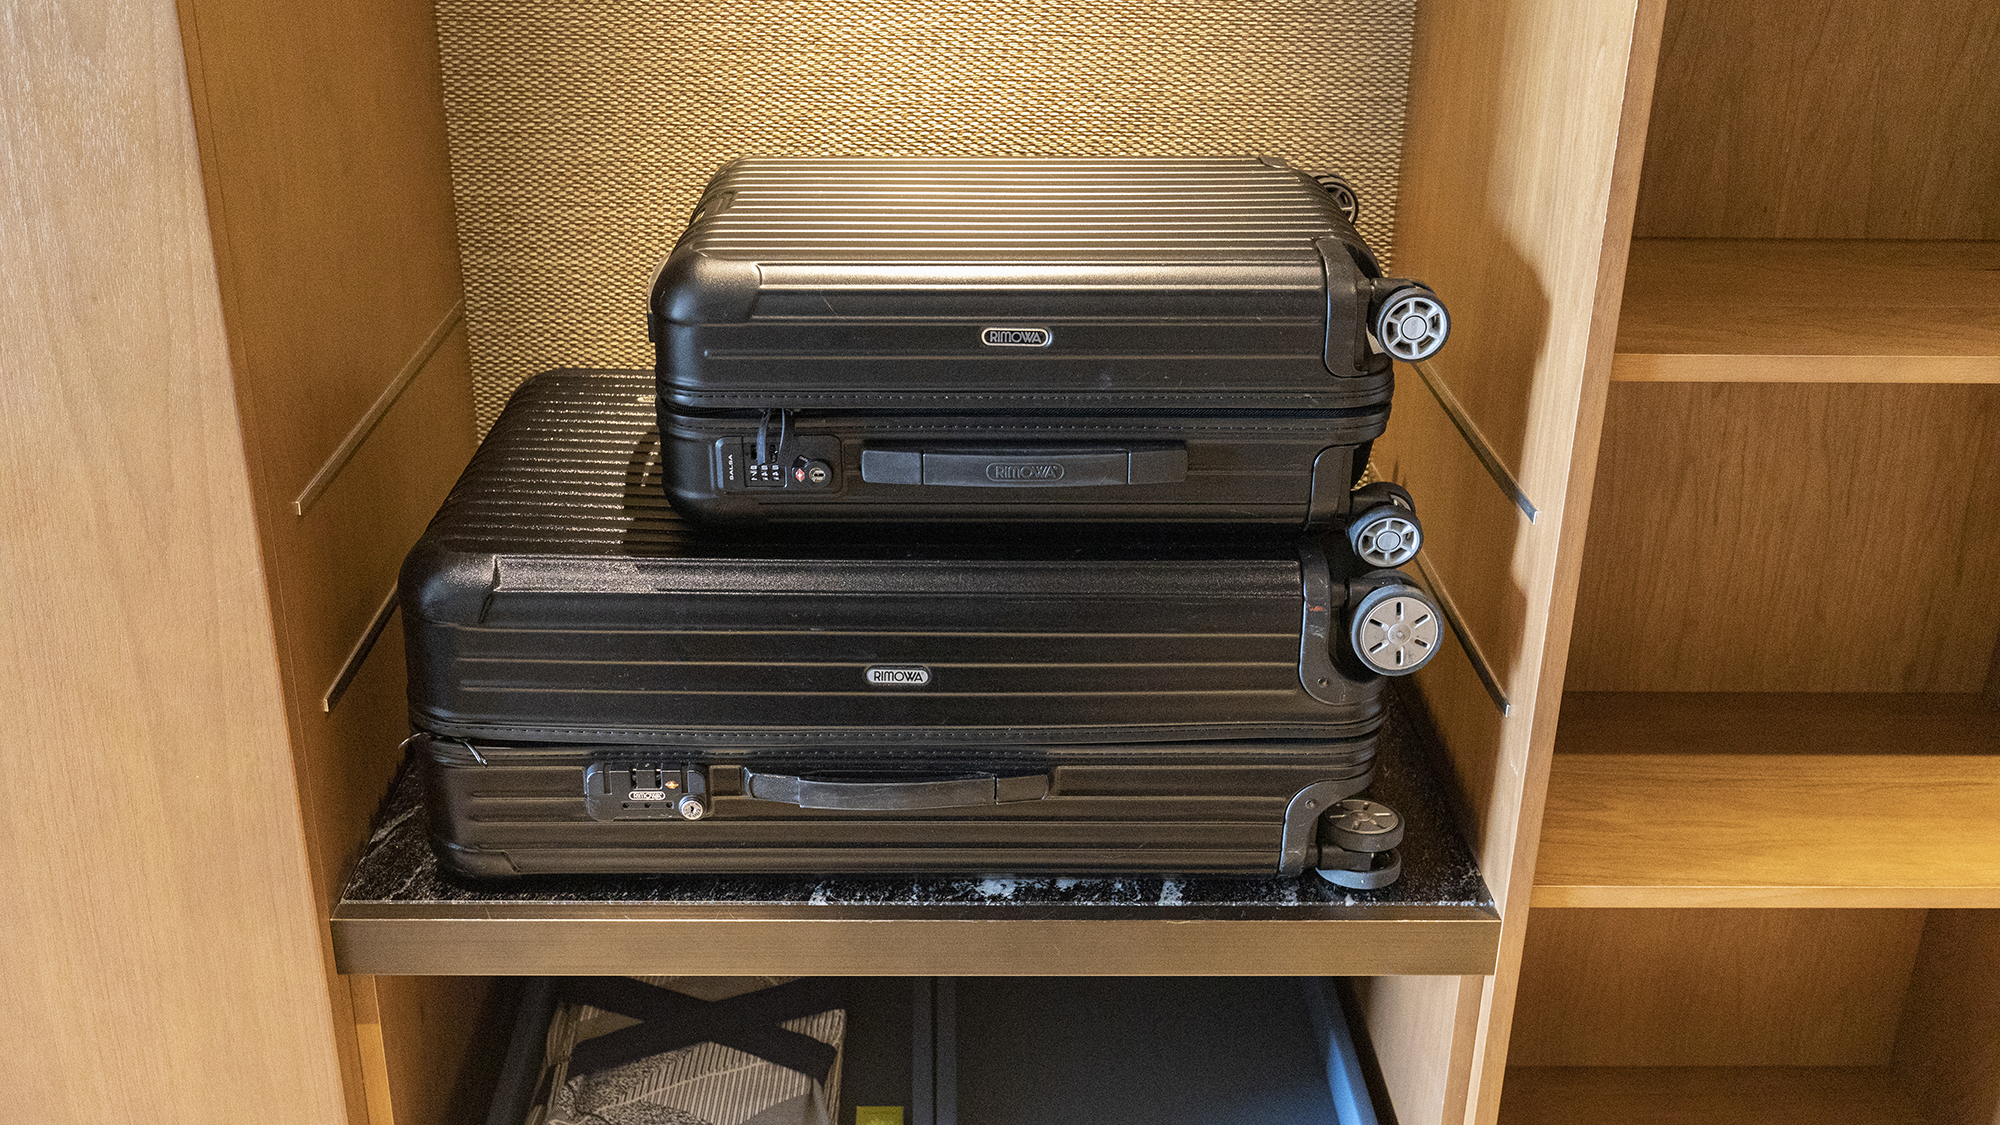 大きなスーツケースも収まるバゲージラック。床にスーツケースを広げることなく、荷物の整理が可能です。